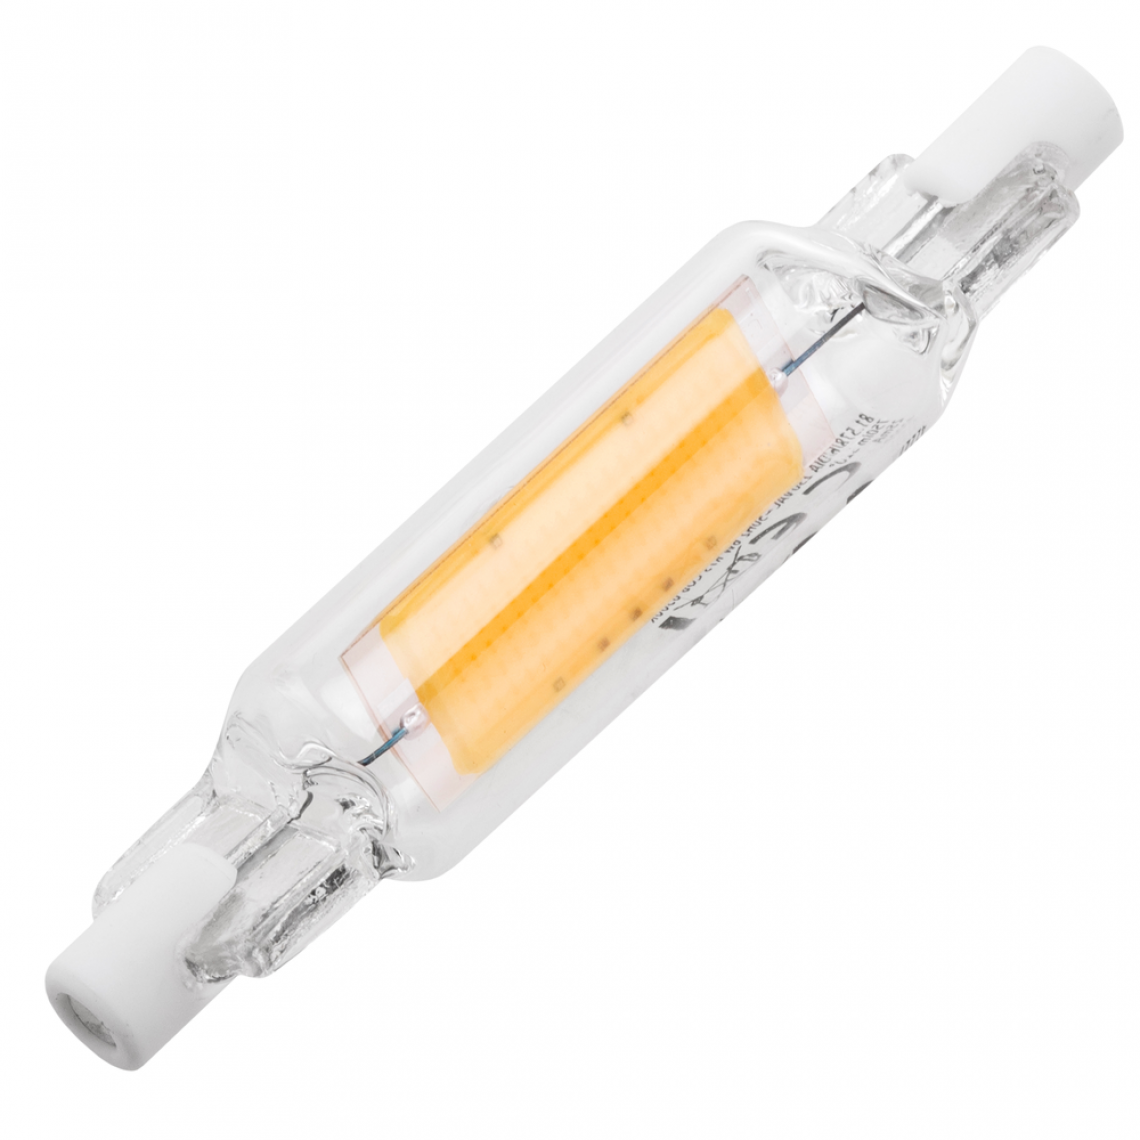 Bematik - Ampoule LED R7S 230VAC 6W blanc chaud 3000K - Tubes et néons